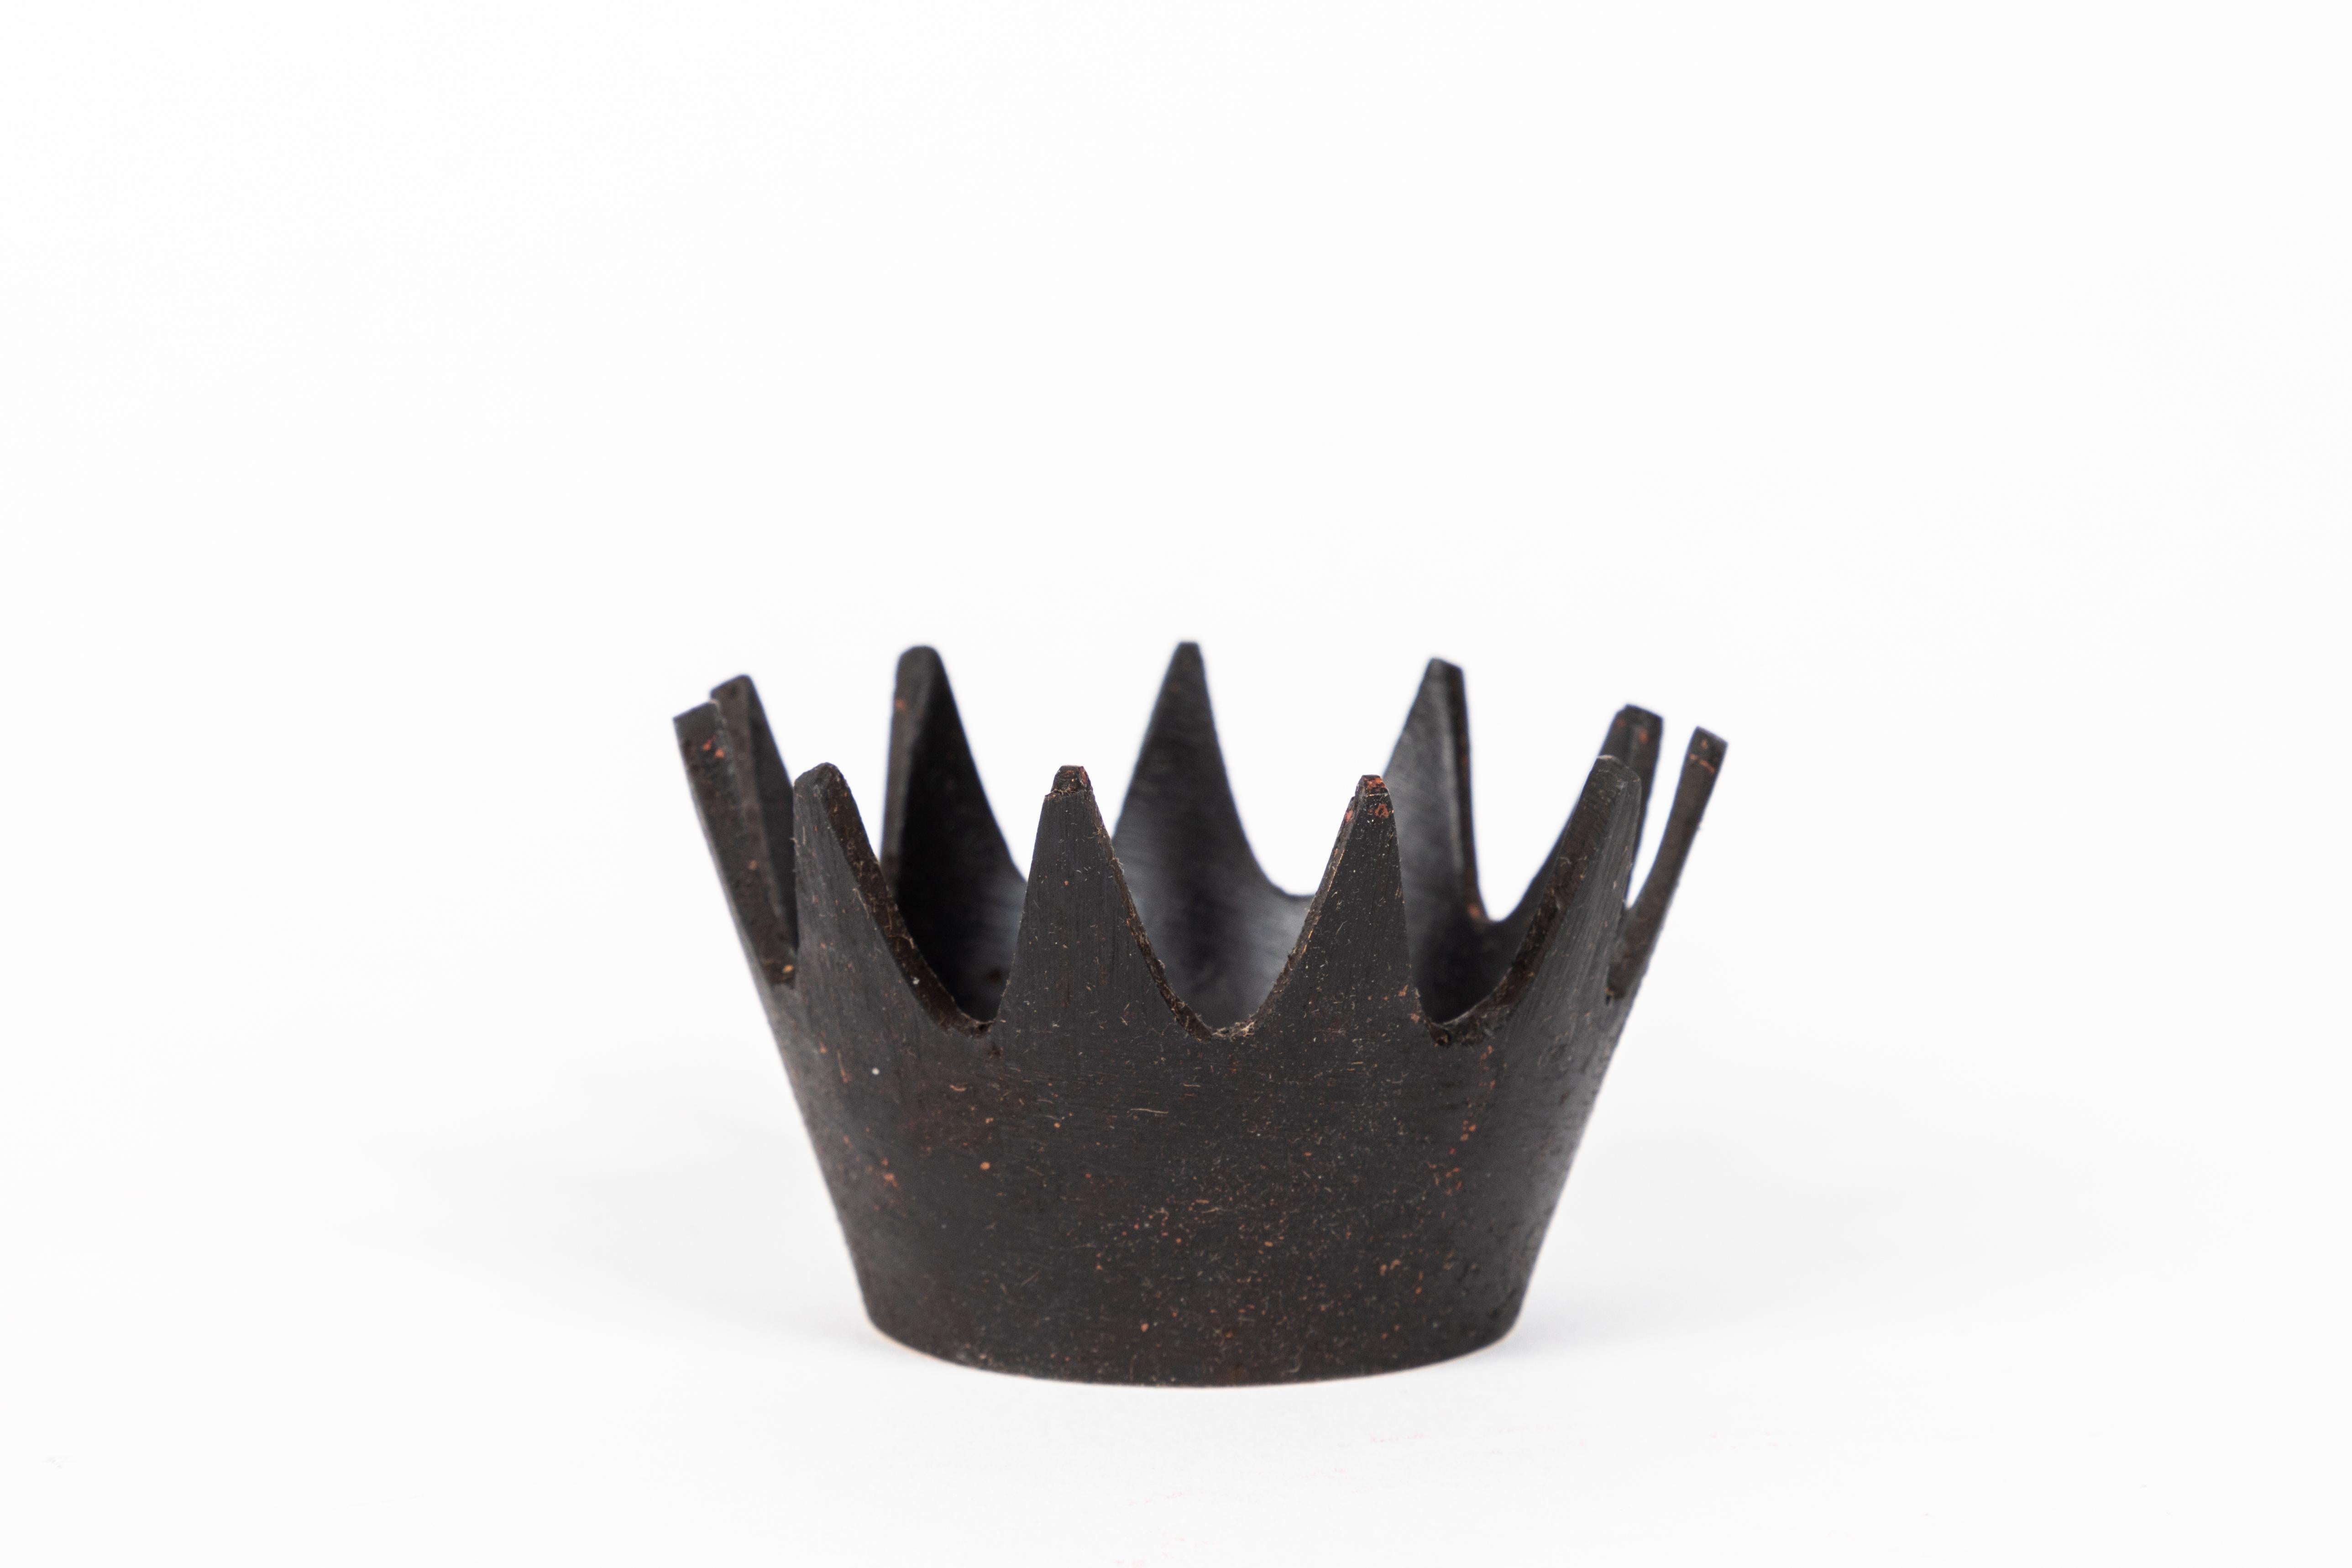 Carl Auböck Modell #3600 'Crown' Schale aus patiniertem Messing. Diese unglaublich raffinierte und skulpturale Wiener Schale wurde in den 1950er Jahren entworfen und ist aus patiniertem Messing gefertigt. Dieses dekorative Gefäß, welches urspünglich